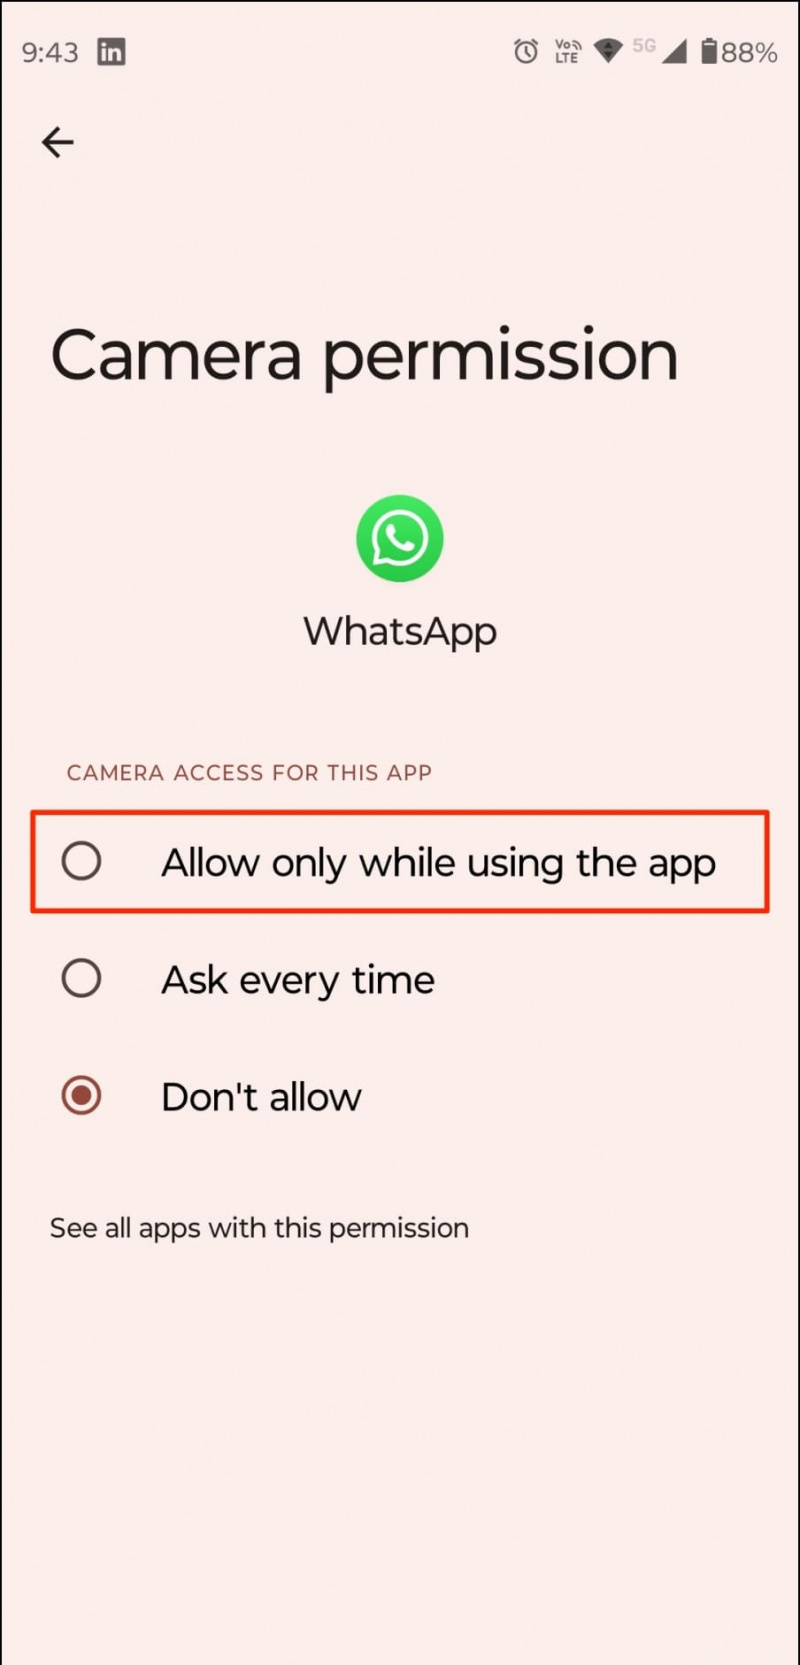   Permet l'accés a la càmera de WhatsApp per a l'inici de sessió de dos dispositius